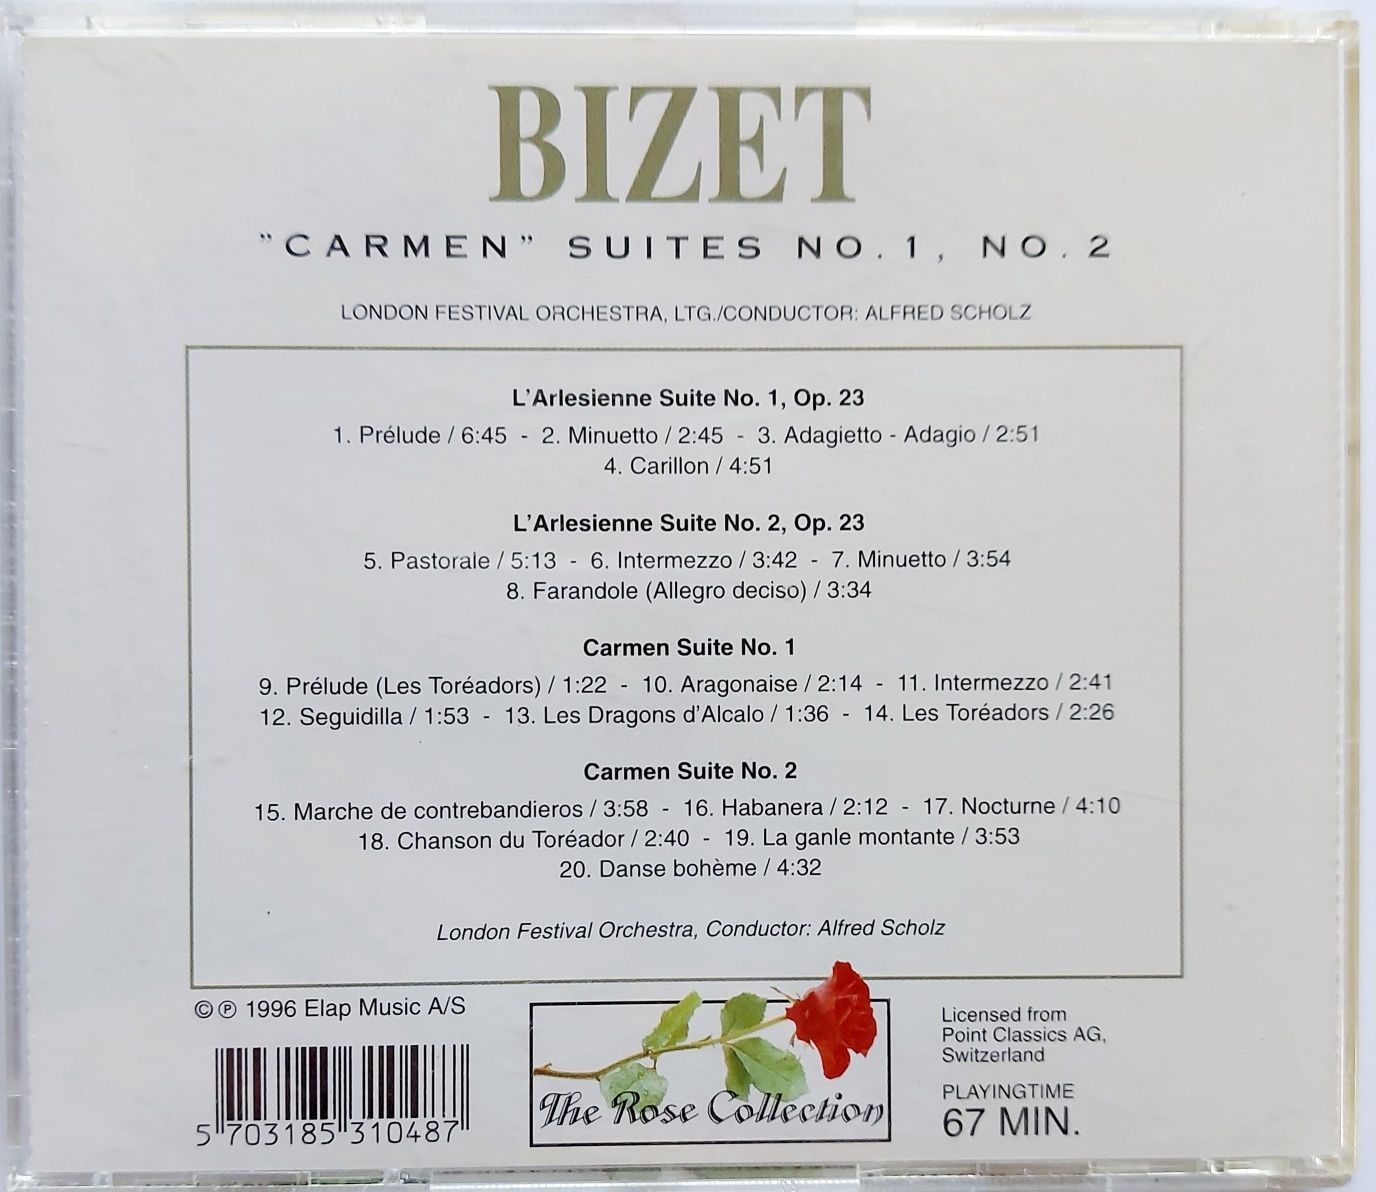 Bizet Carmen Suites no.1 no.2 1996r